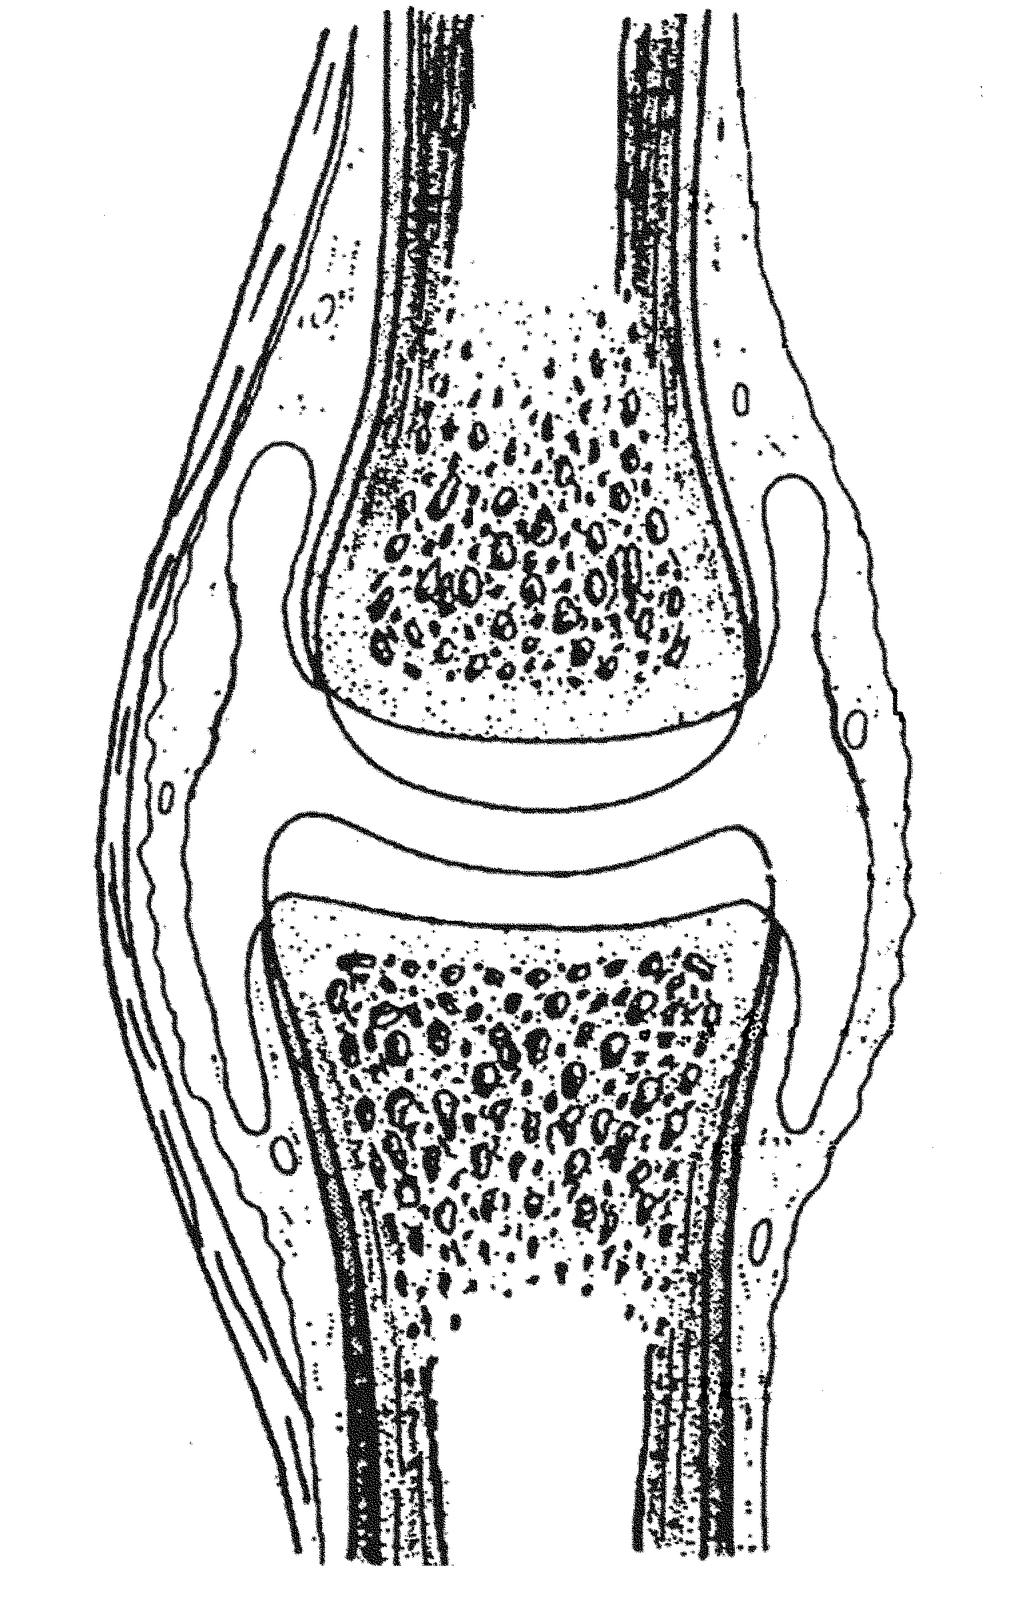 synoviale Stratum fibrosum Gelenkkapsel Gelenkhöhle Gelenkknorpel Knochen